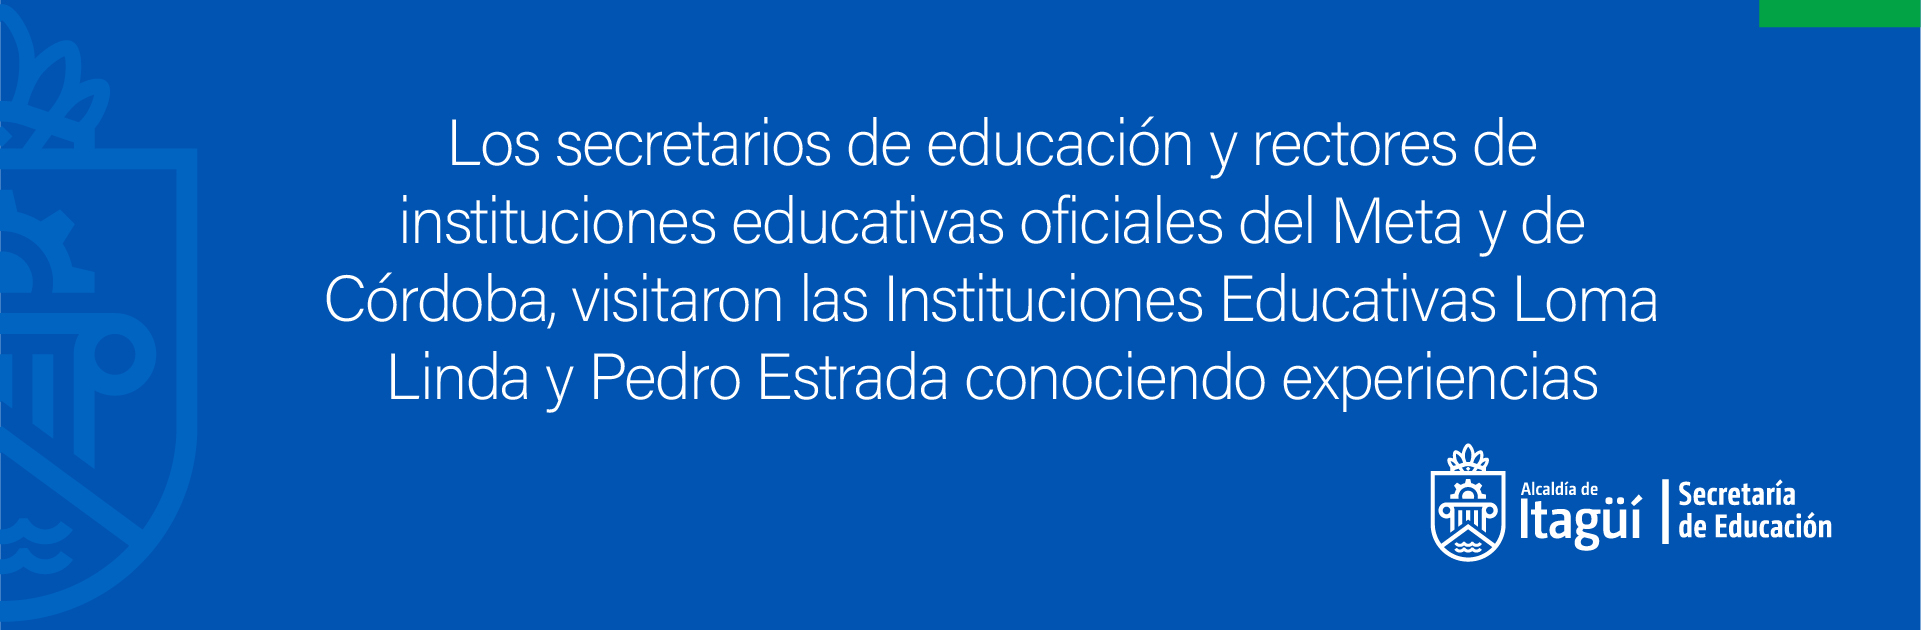 Los secretarios de educación y rectores de instituciones educativas oficiales del Meta y de Córdoba, visitaron las Instituciones Educativas Loma Linda y Pedro Estrada conociendo...